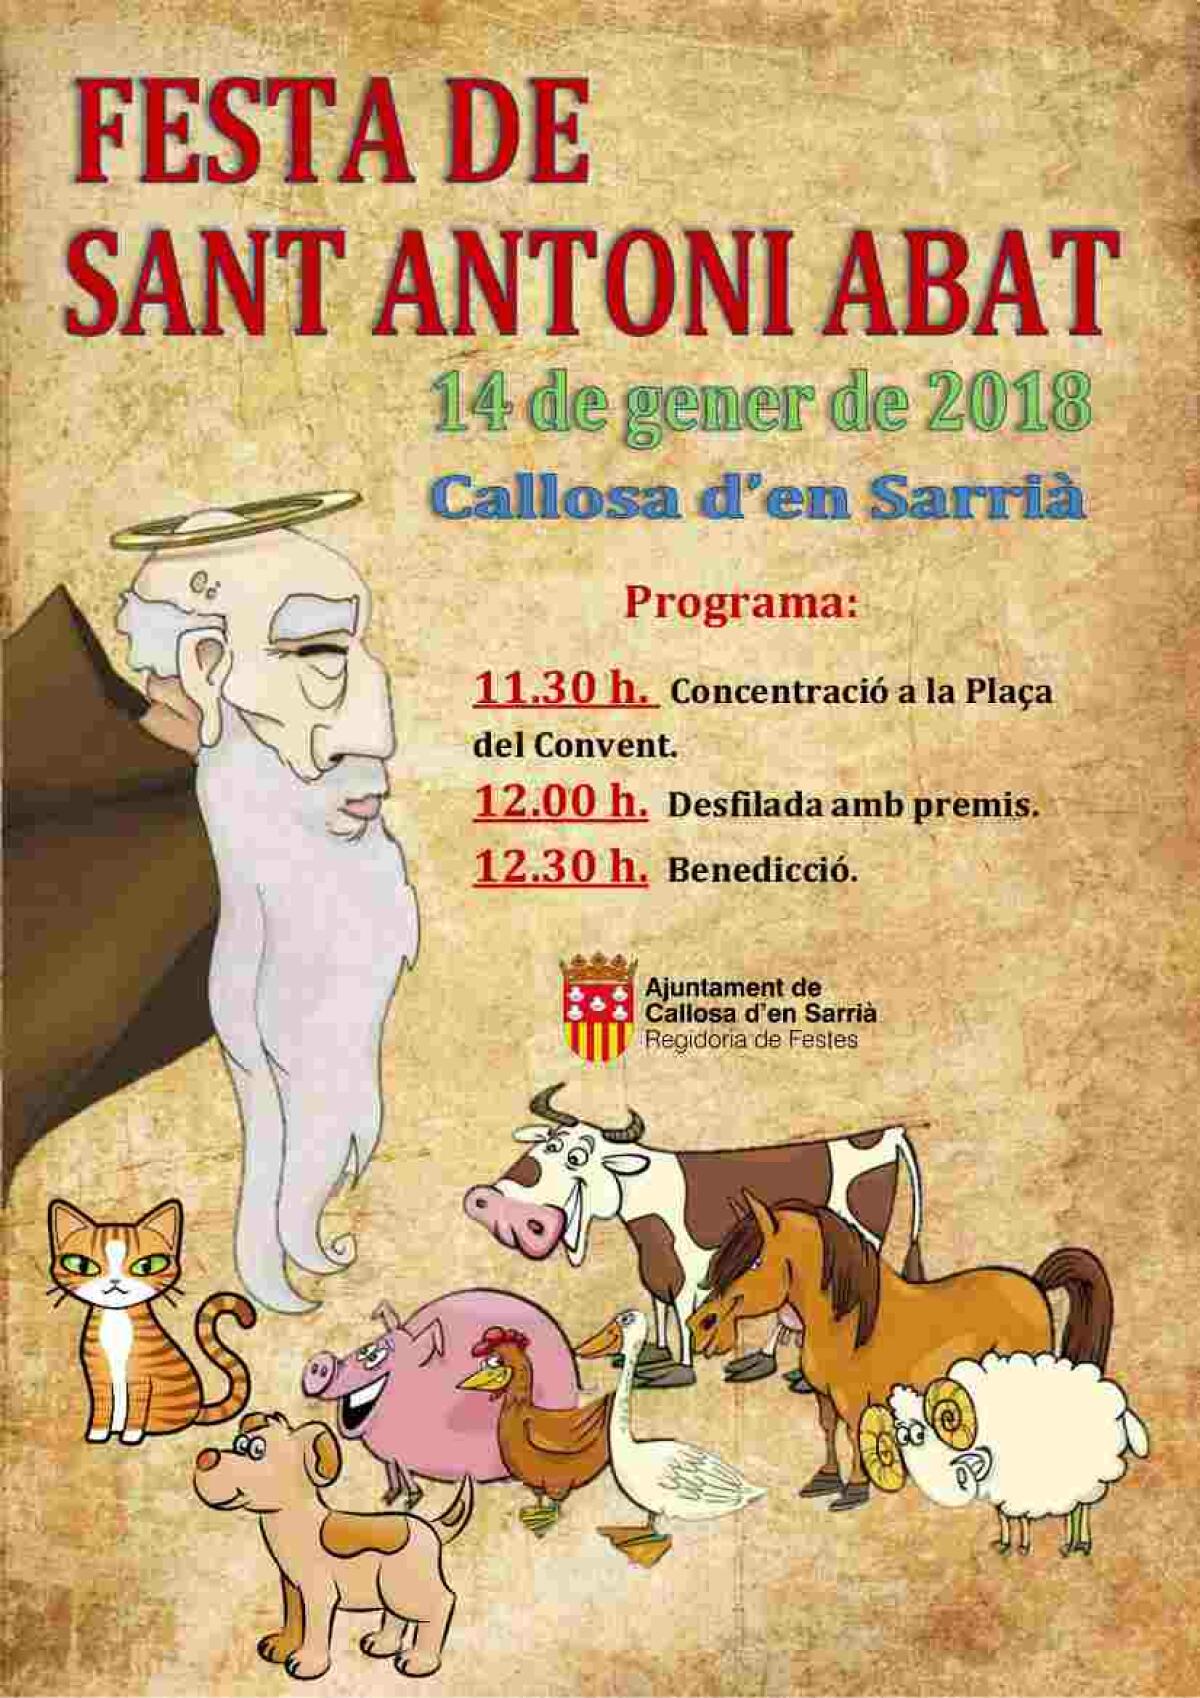 Callosa d’en Sarrià celebra Sant Antoni Abat este domingo con la tradicional bendición de animales